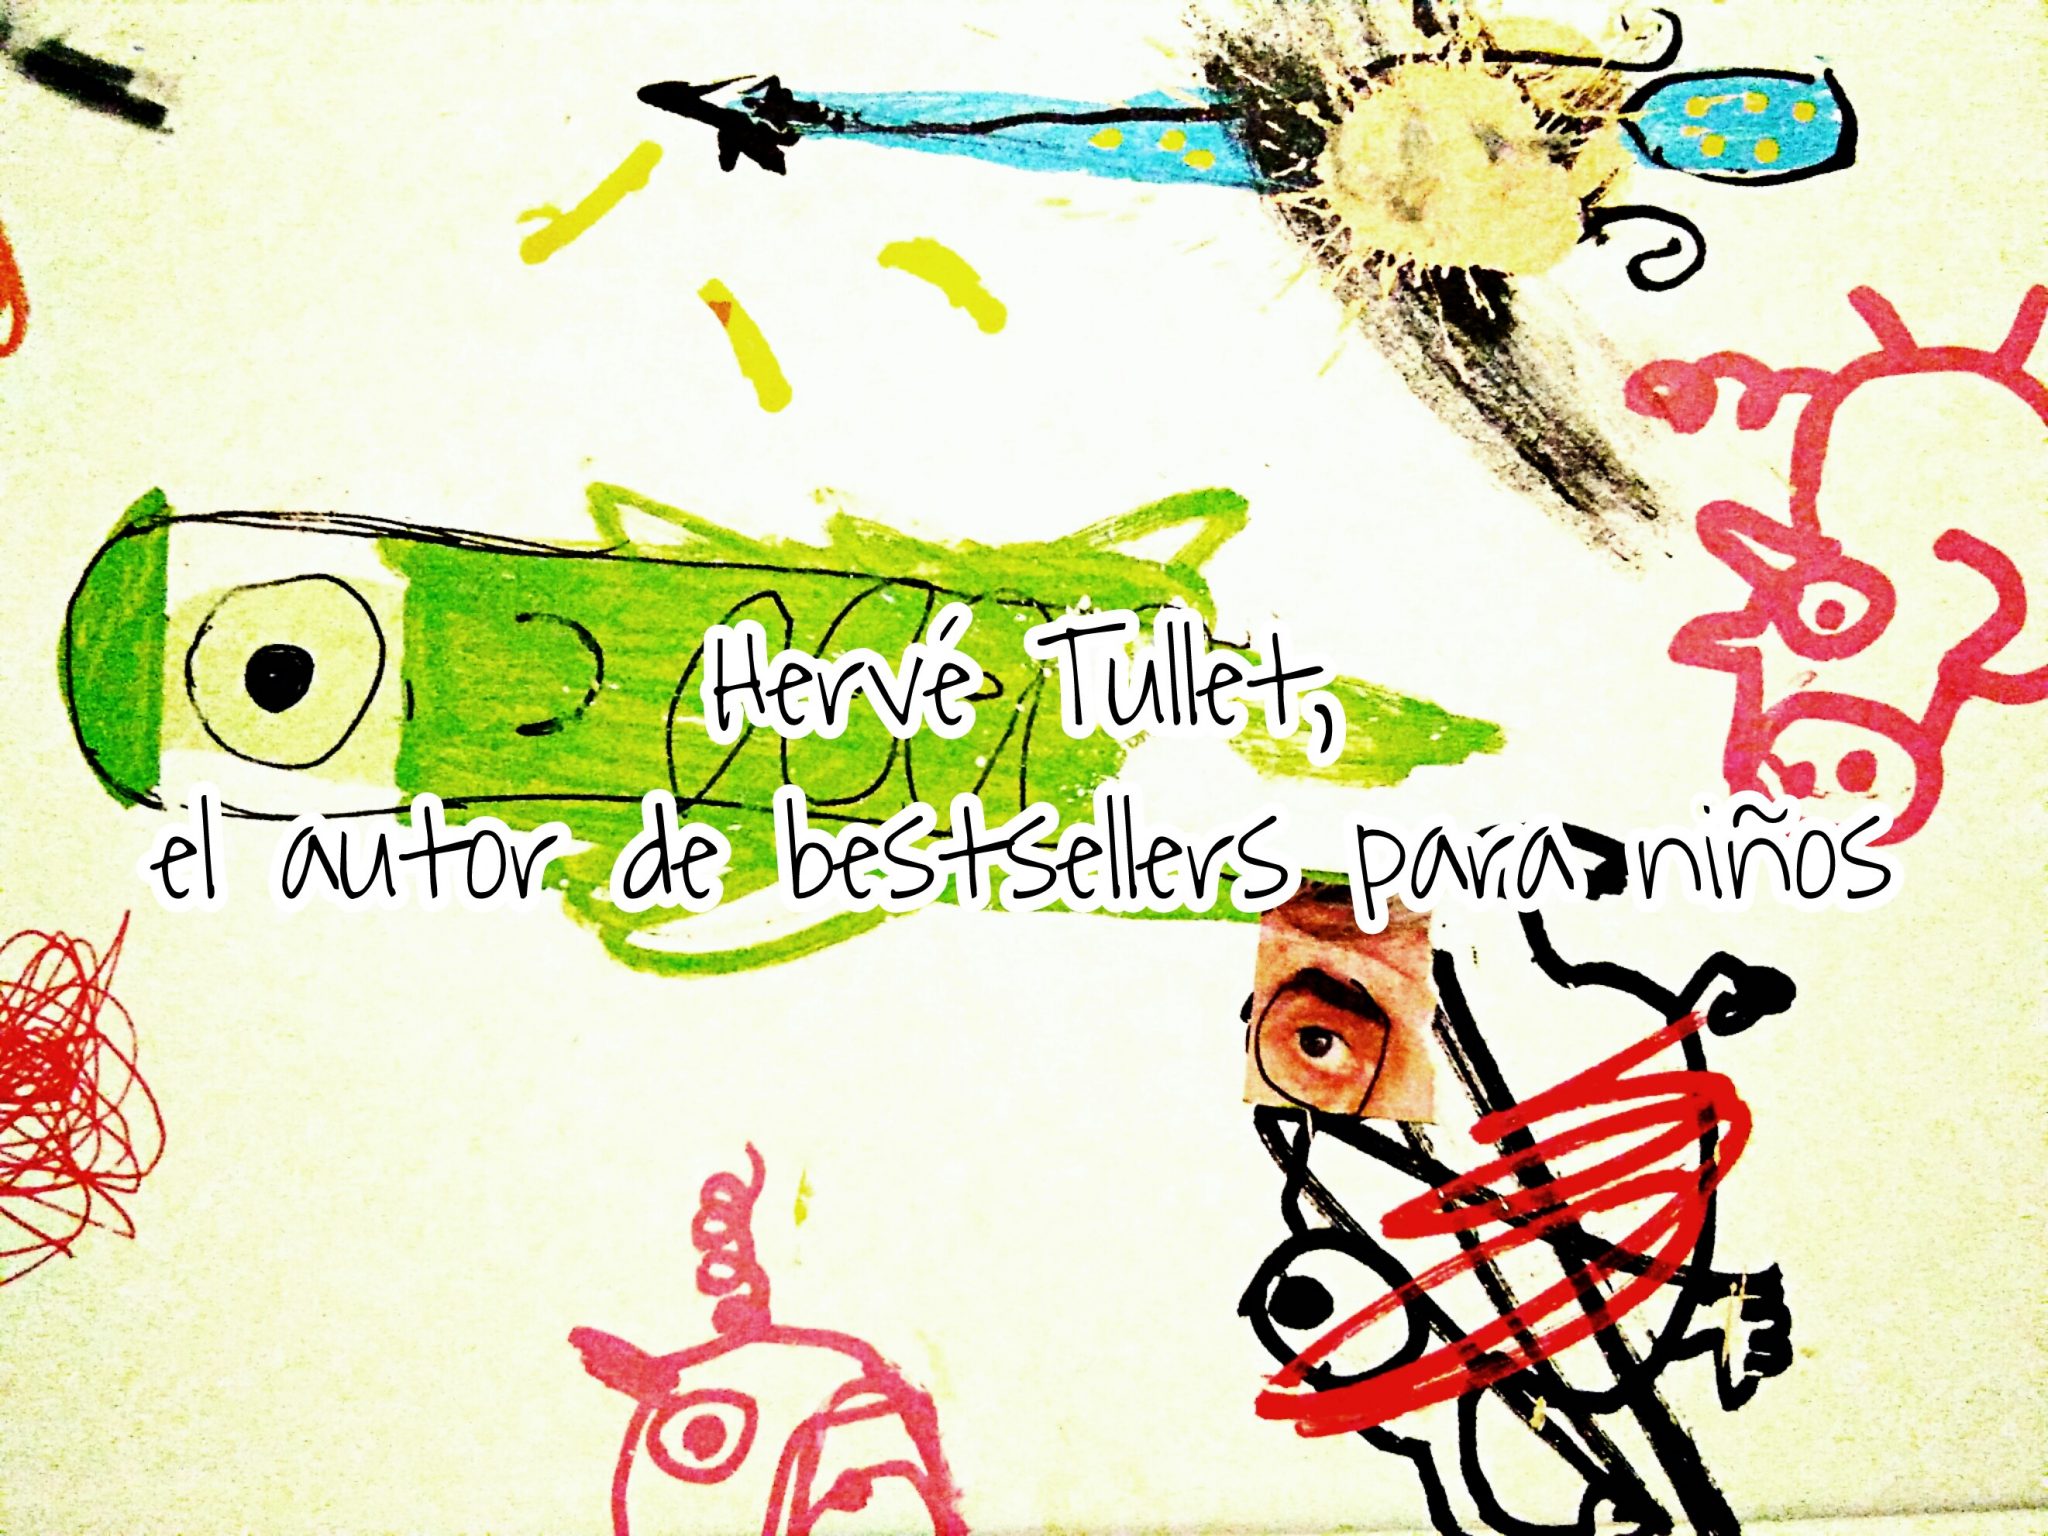 Hervé Tullet, el ilustrador francés que padres y educadores deberían  conocer - Elige Educar